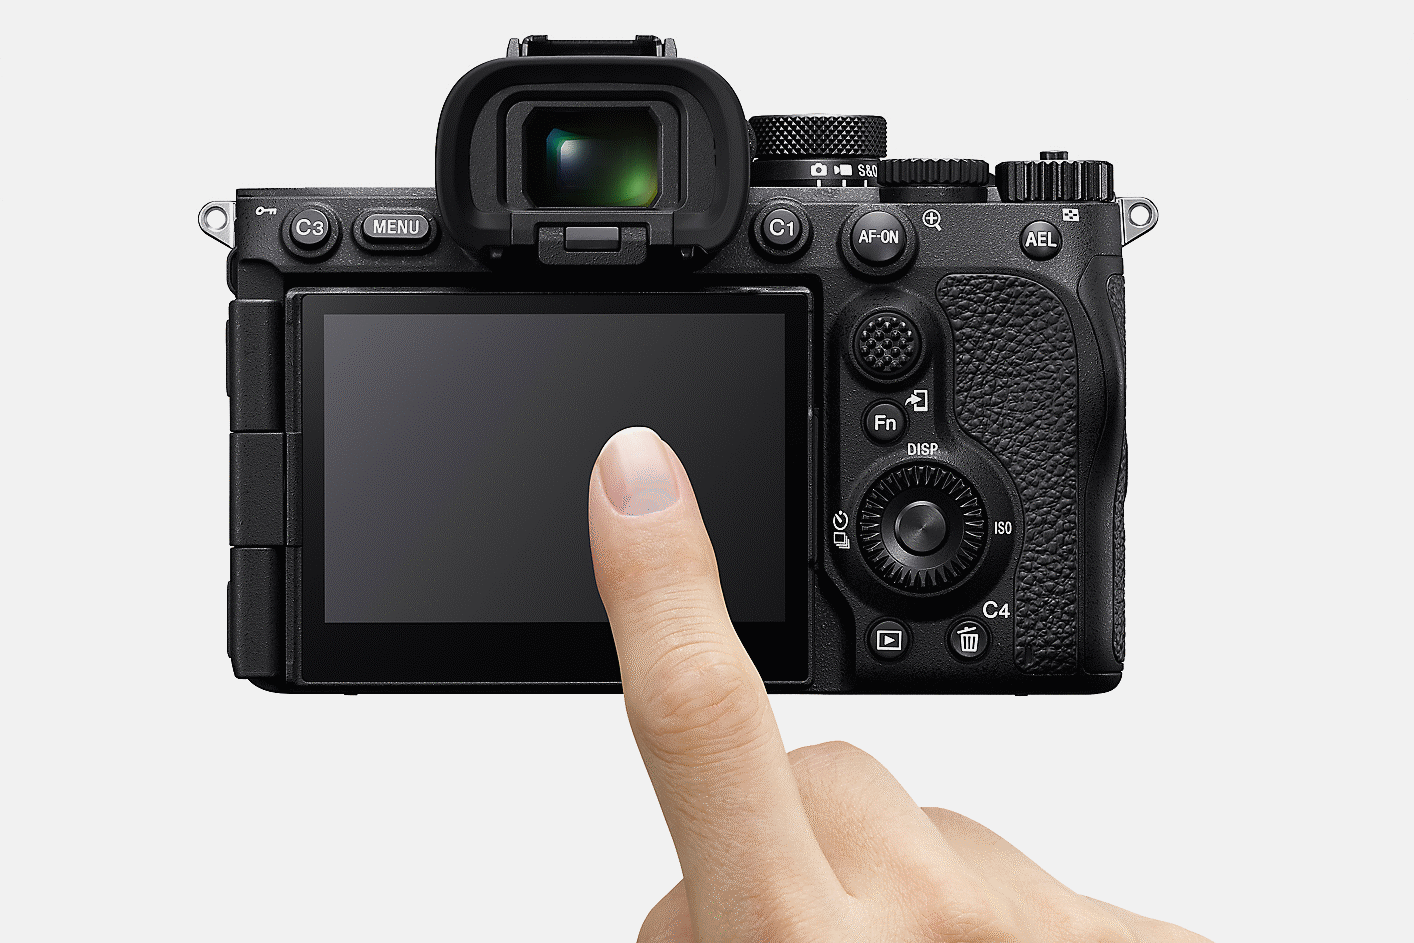 Abbildung des LC-Displays der Kamera mit Finger, der es berührt